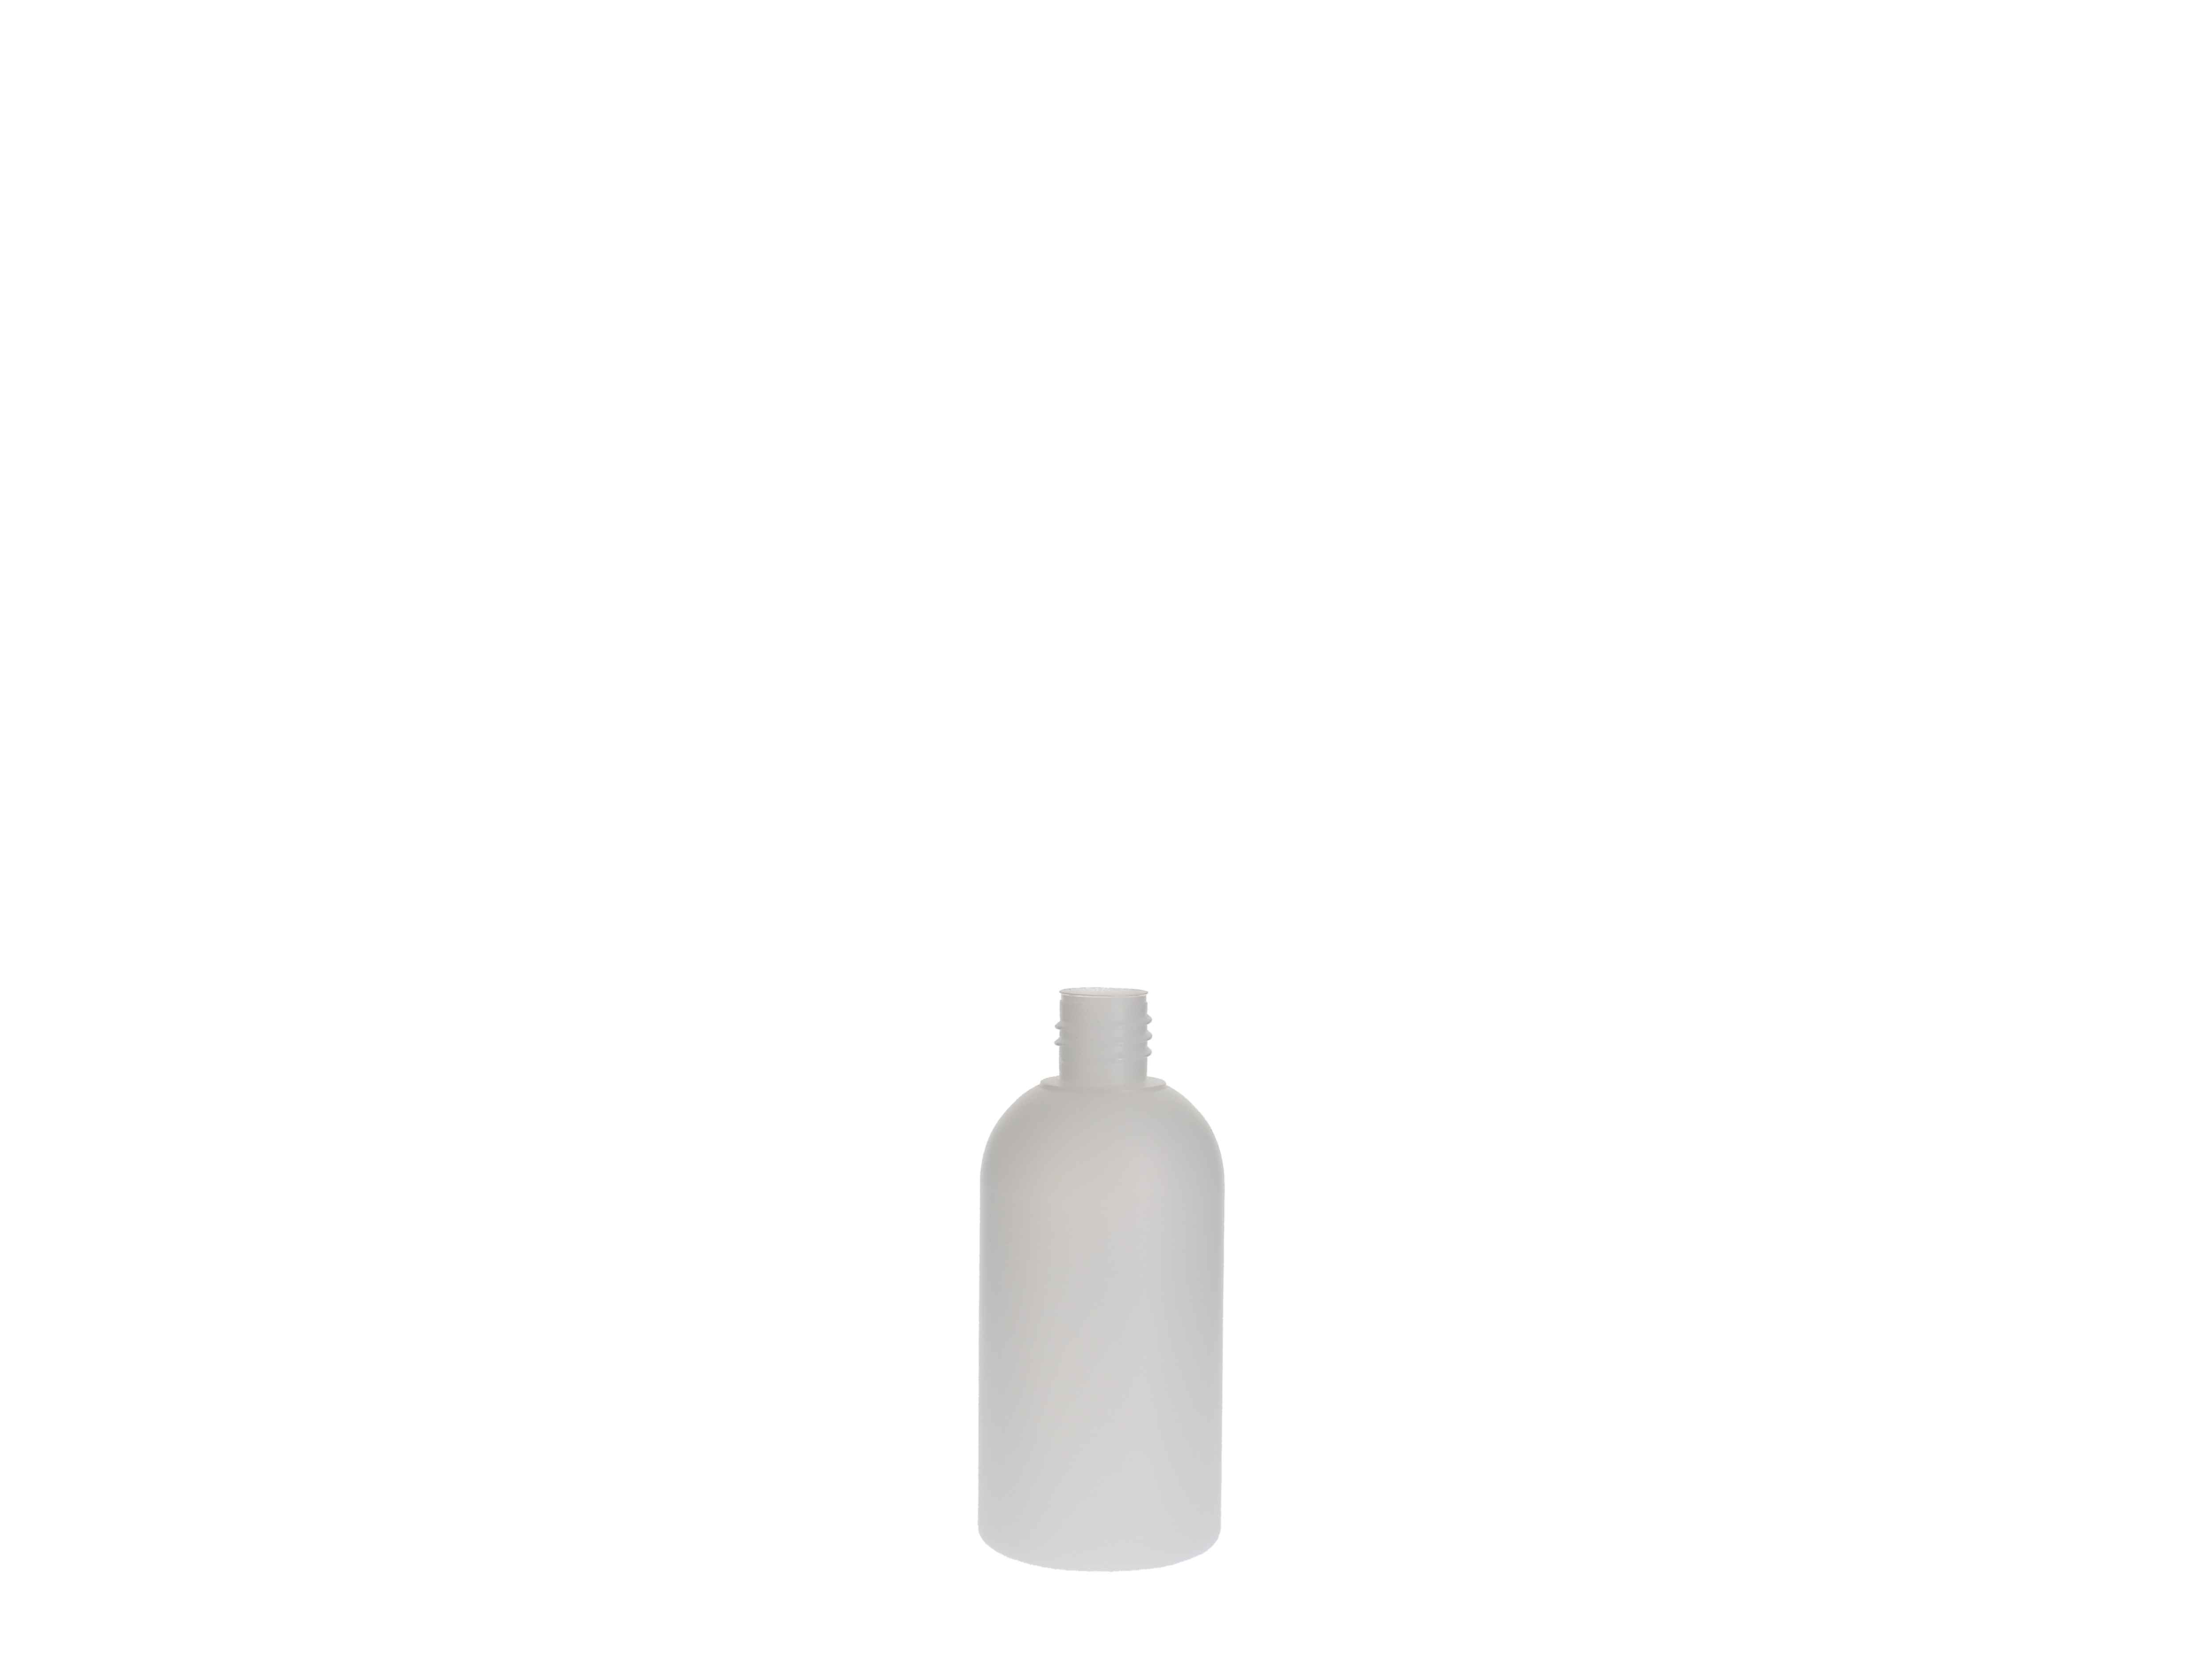    Kunststoff-Flasche rund, natur ohne Verschluss - 100ml